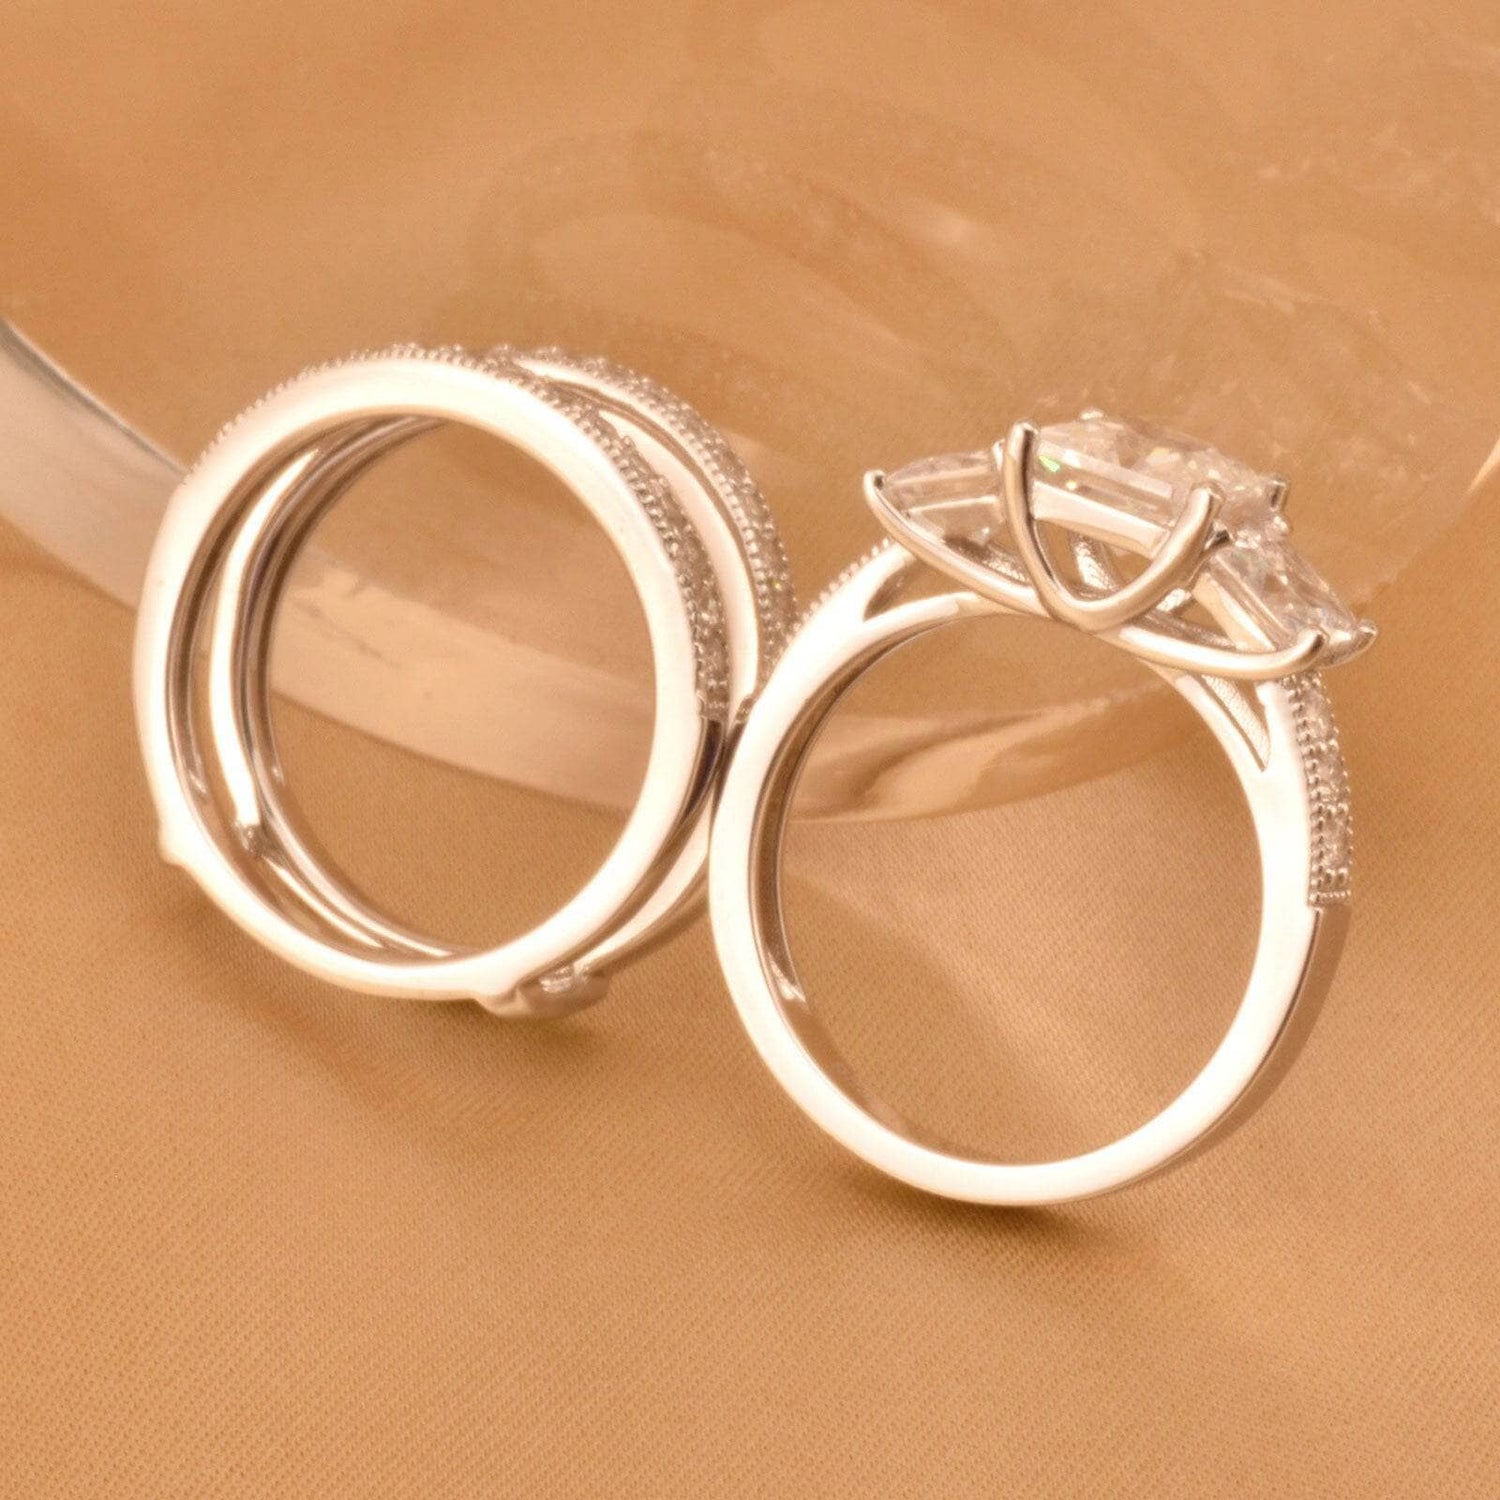 3 Stone Princess Cut EVN™ Diamond Wedding Ring Set-Black Diamonds New York